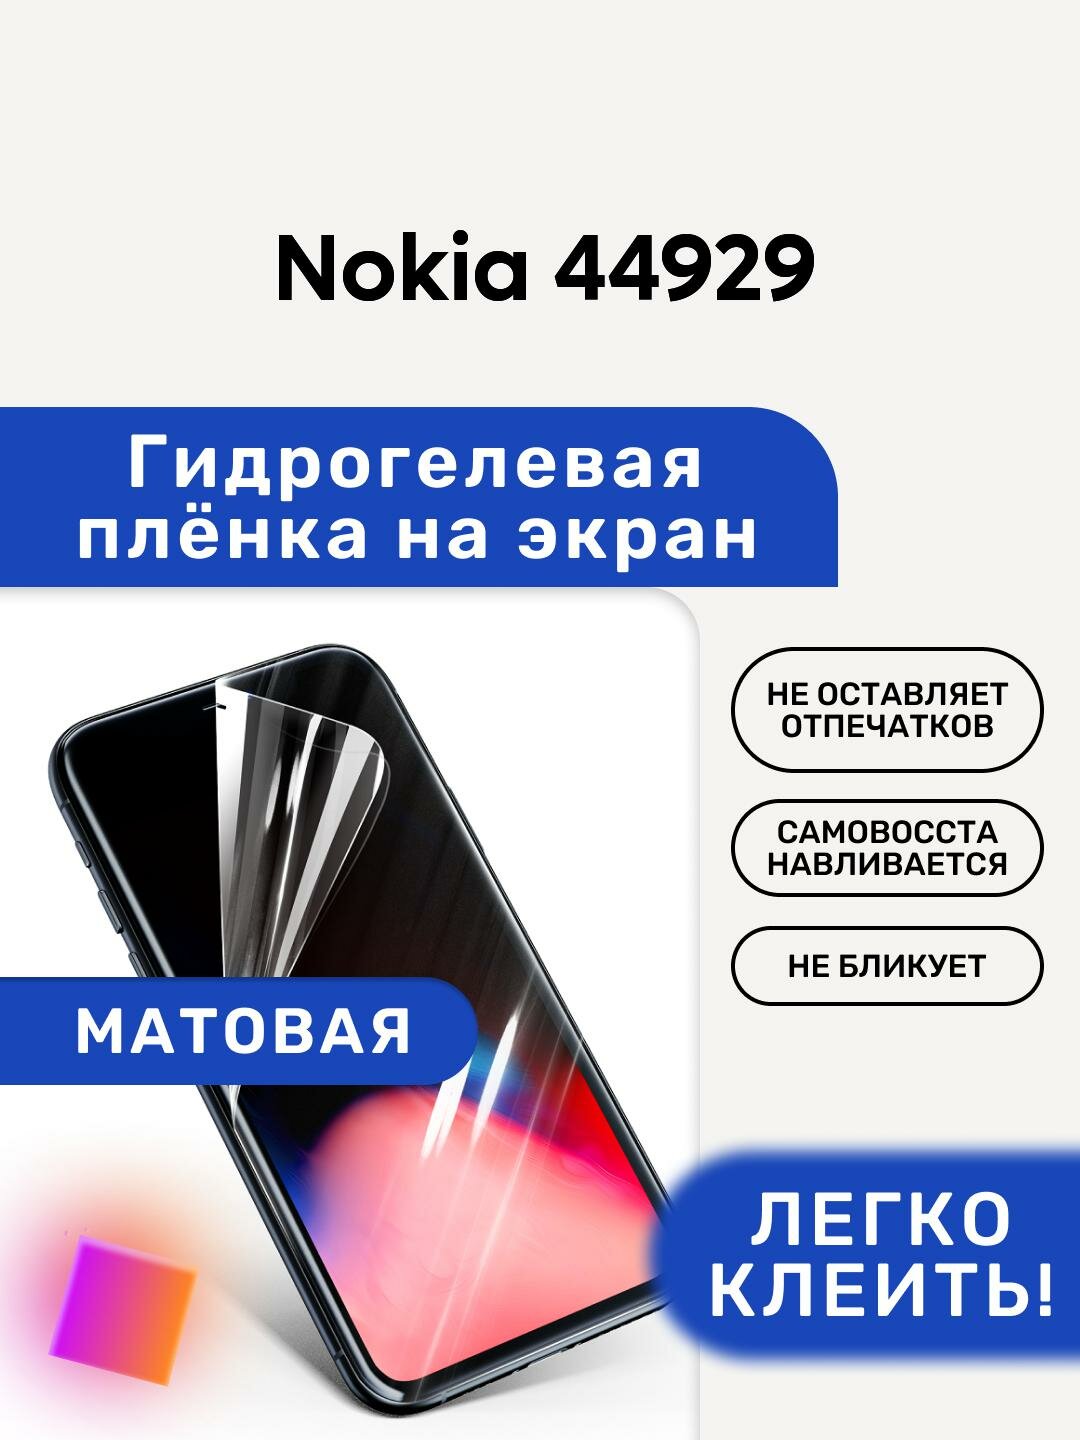 Матовая Гидрогелевая плёнка, полиуретановая, защита экрана Nokia 44929